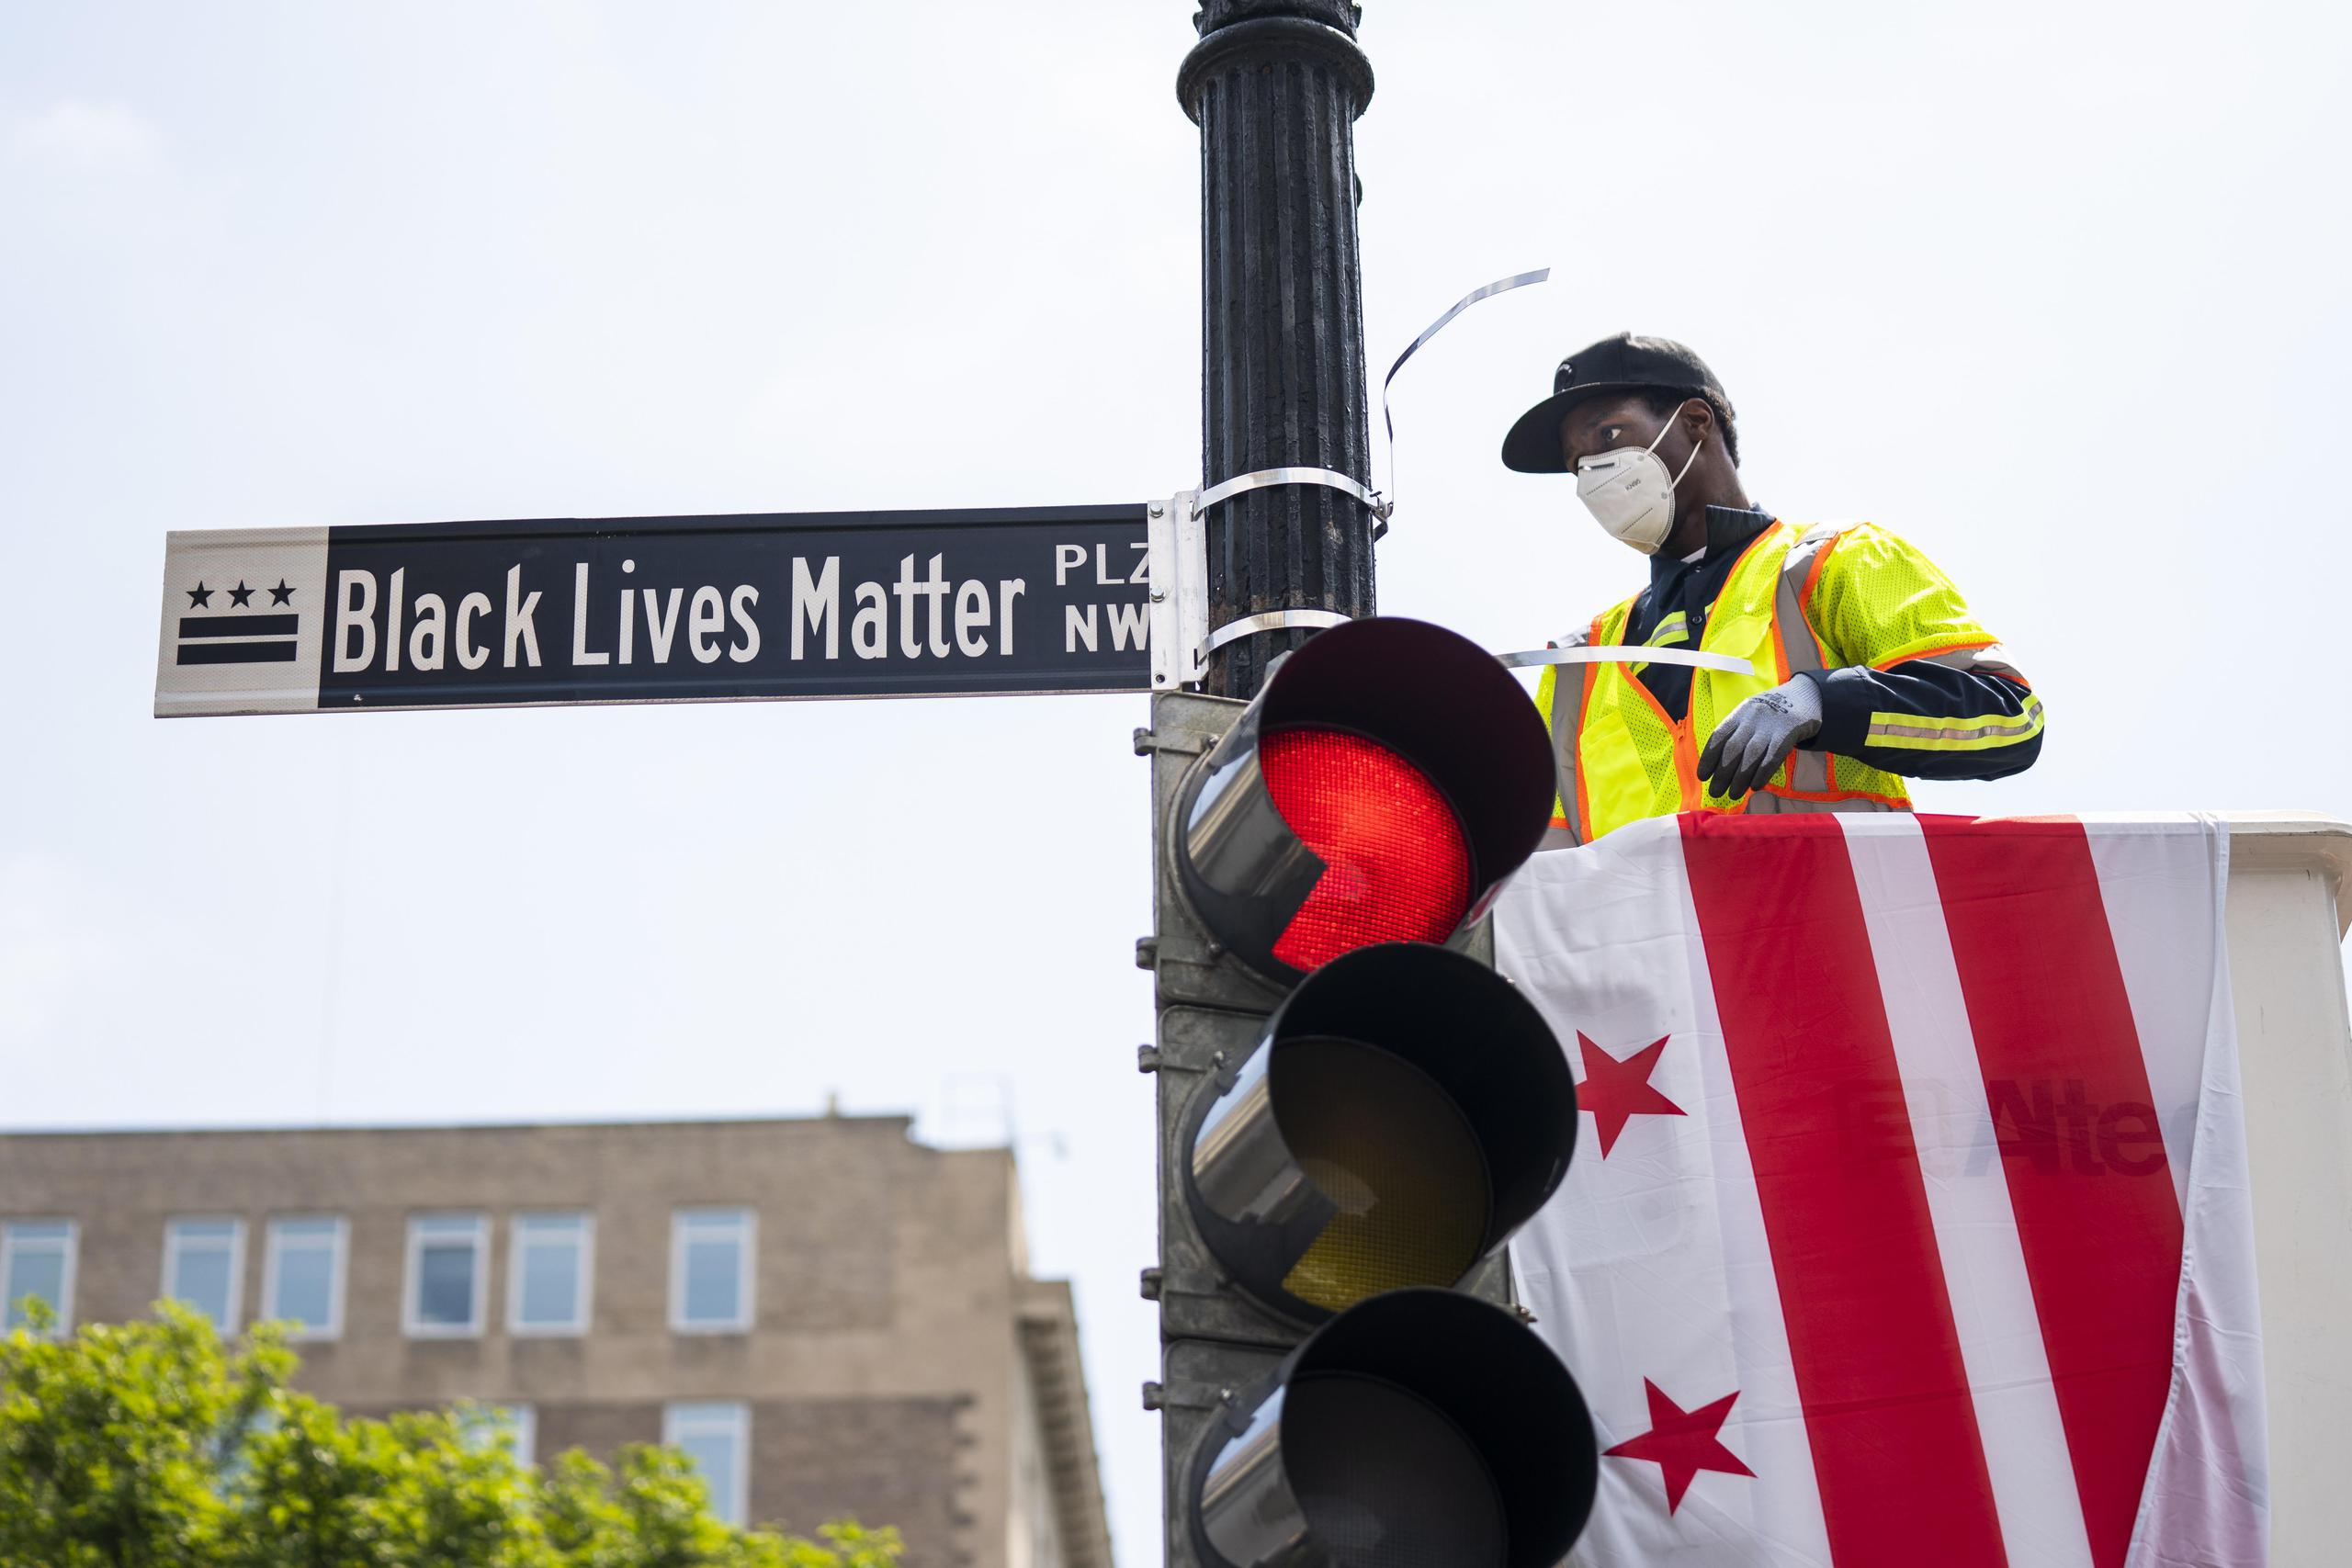 Letrero de la calle "Black Lives Matter".